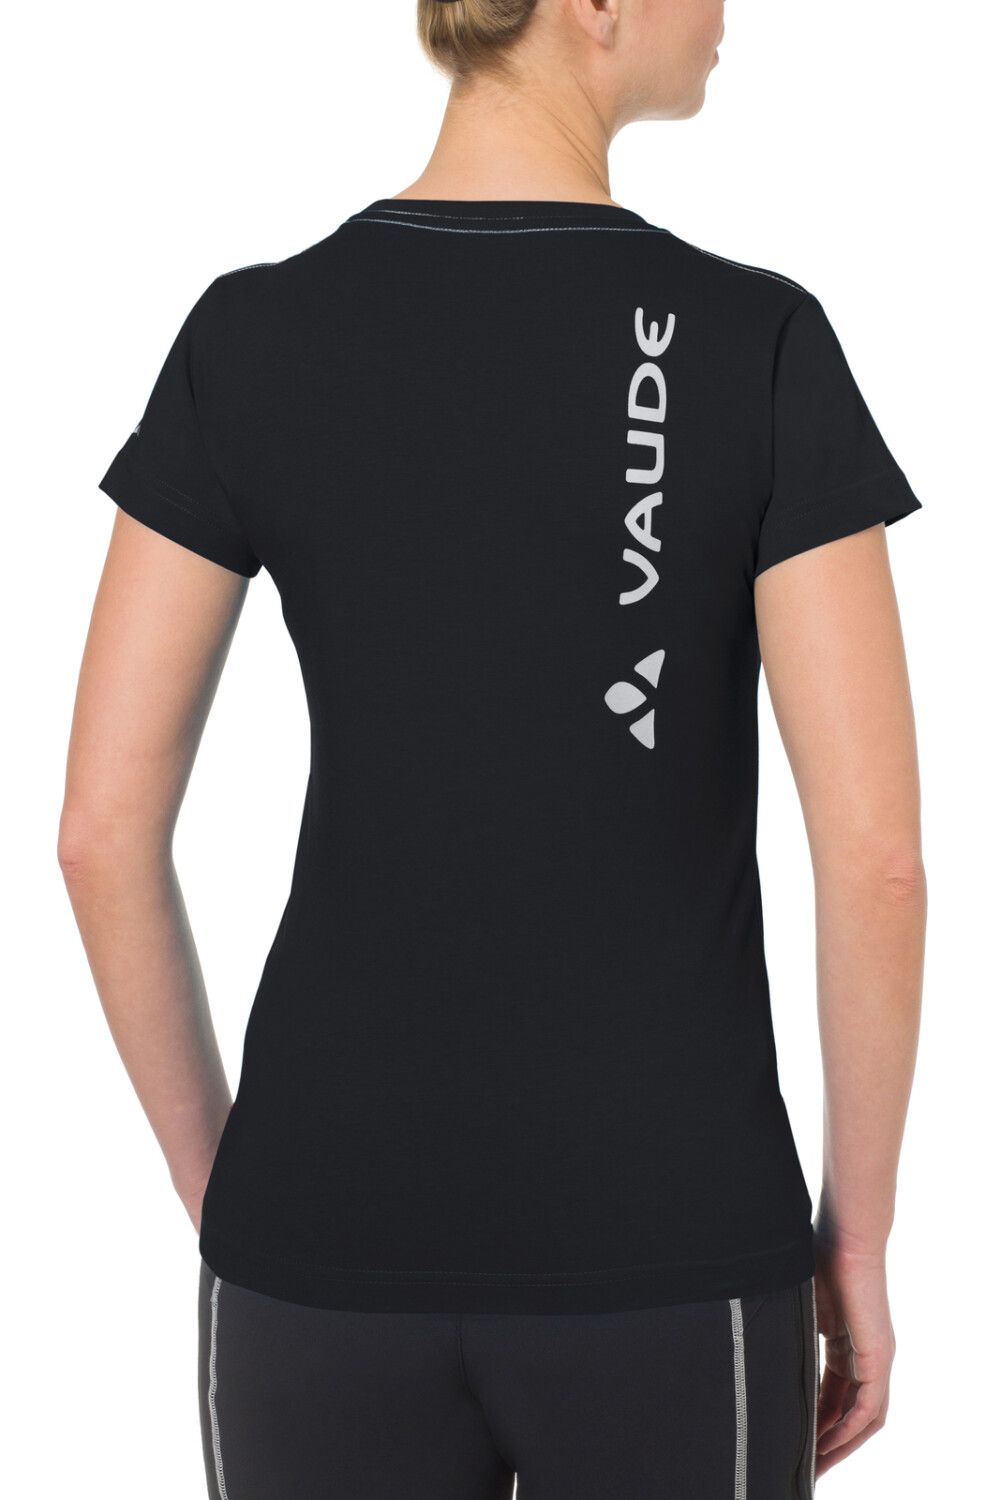 VAUDE Women's Brand Shirt (Bild 7)